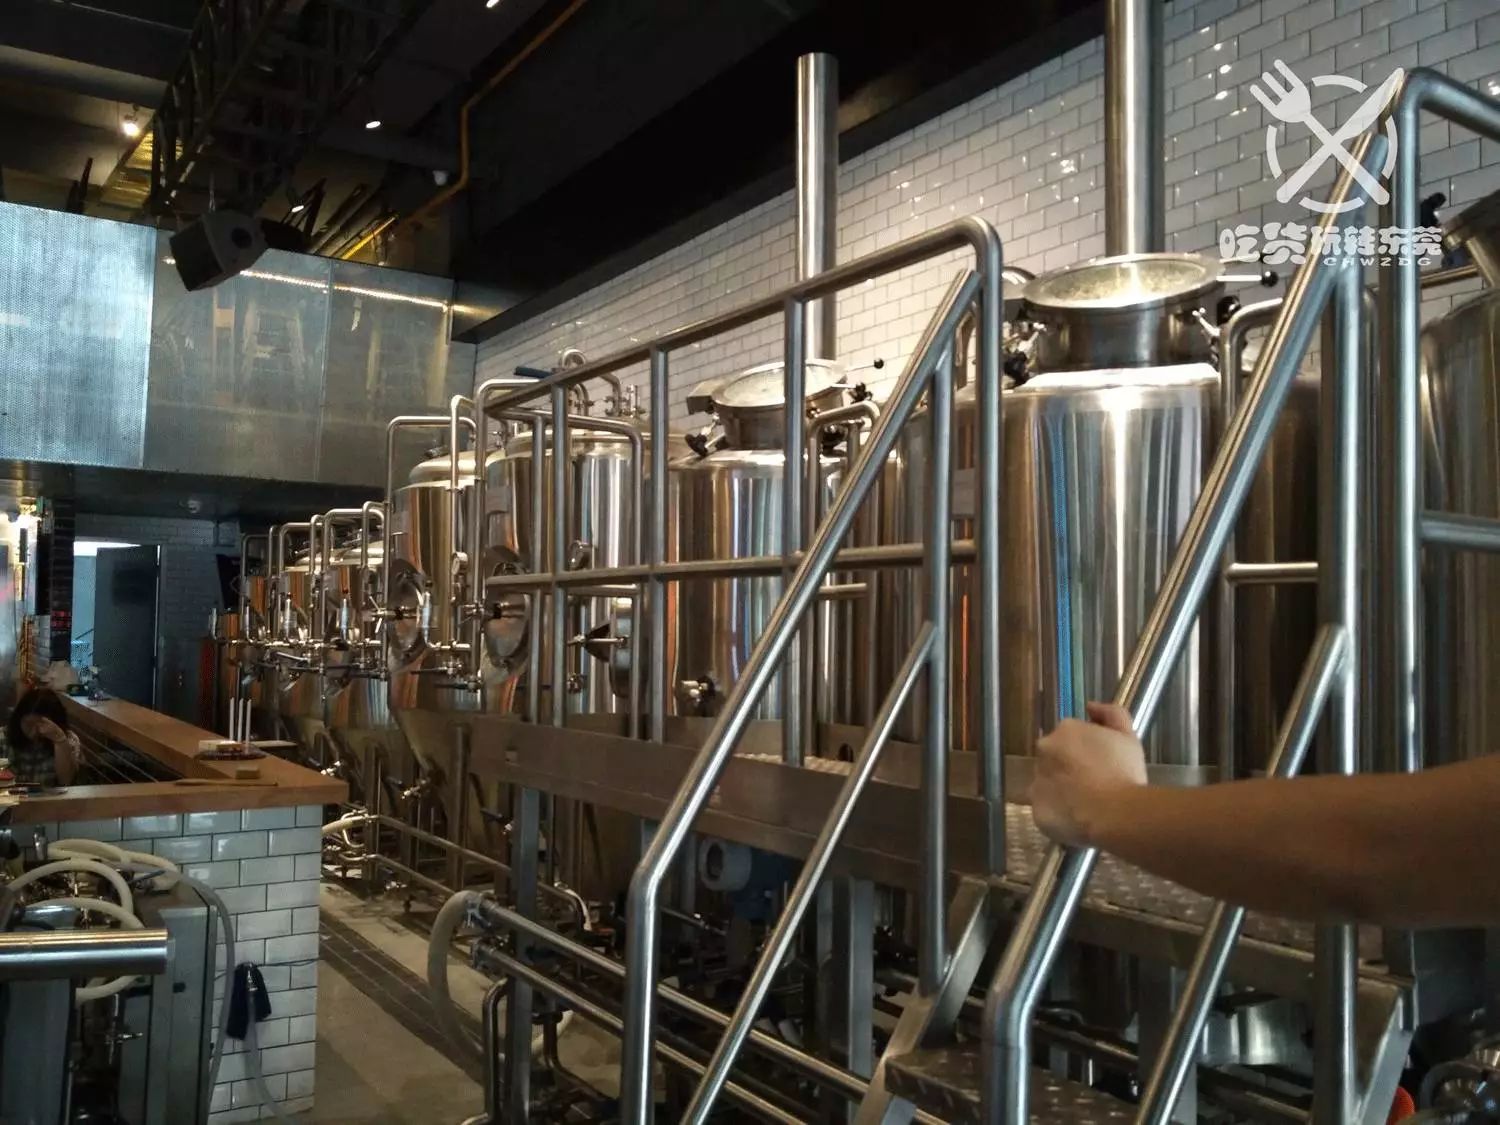 这家『啤酒厂』精酿啤酒美食趴,酷毙全东莞,每天